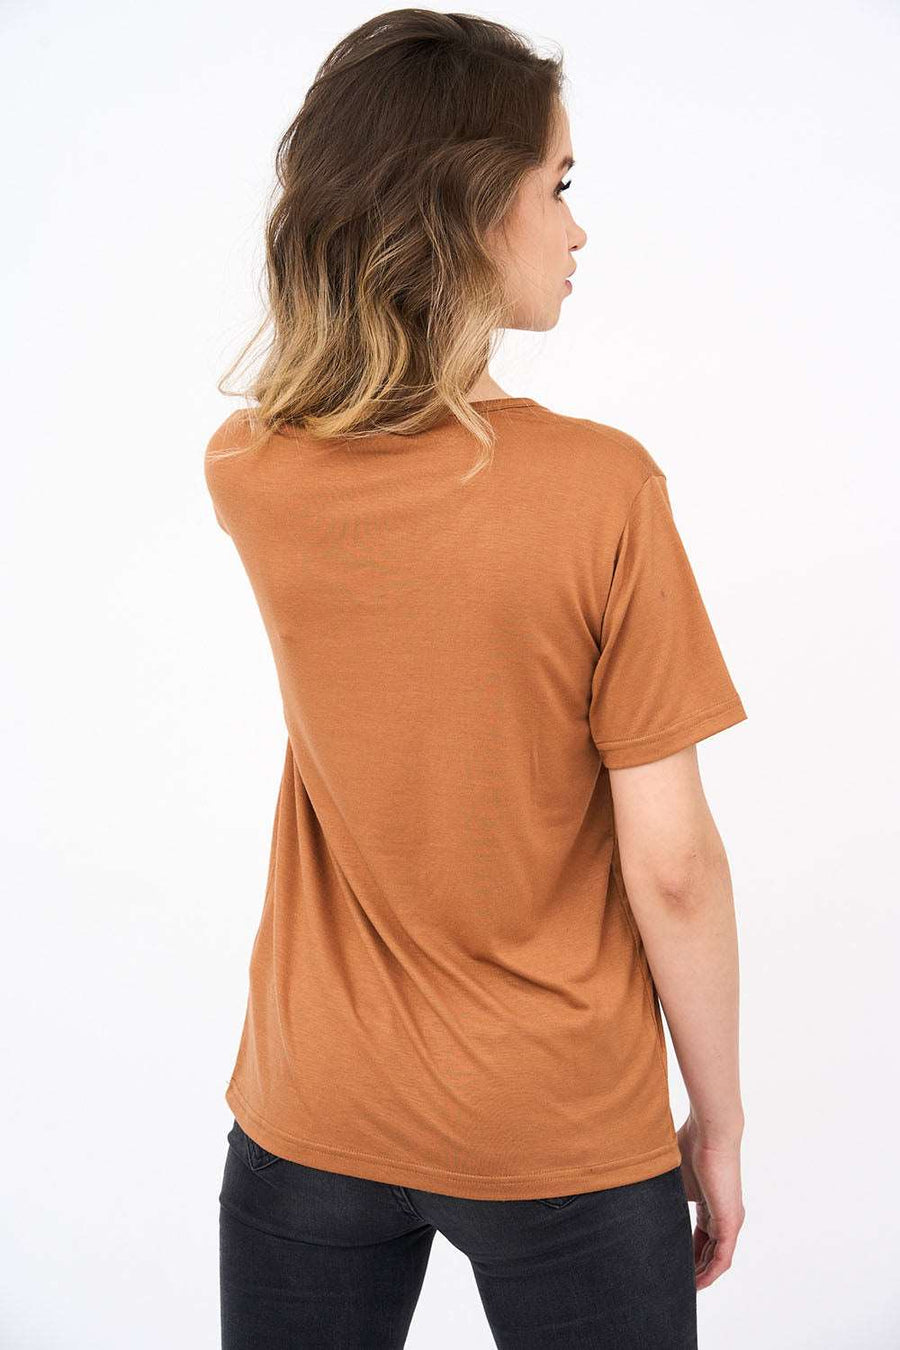 Short-Sleeved V Neck Women's T Shirt in Camel Color!